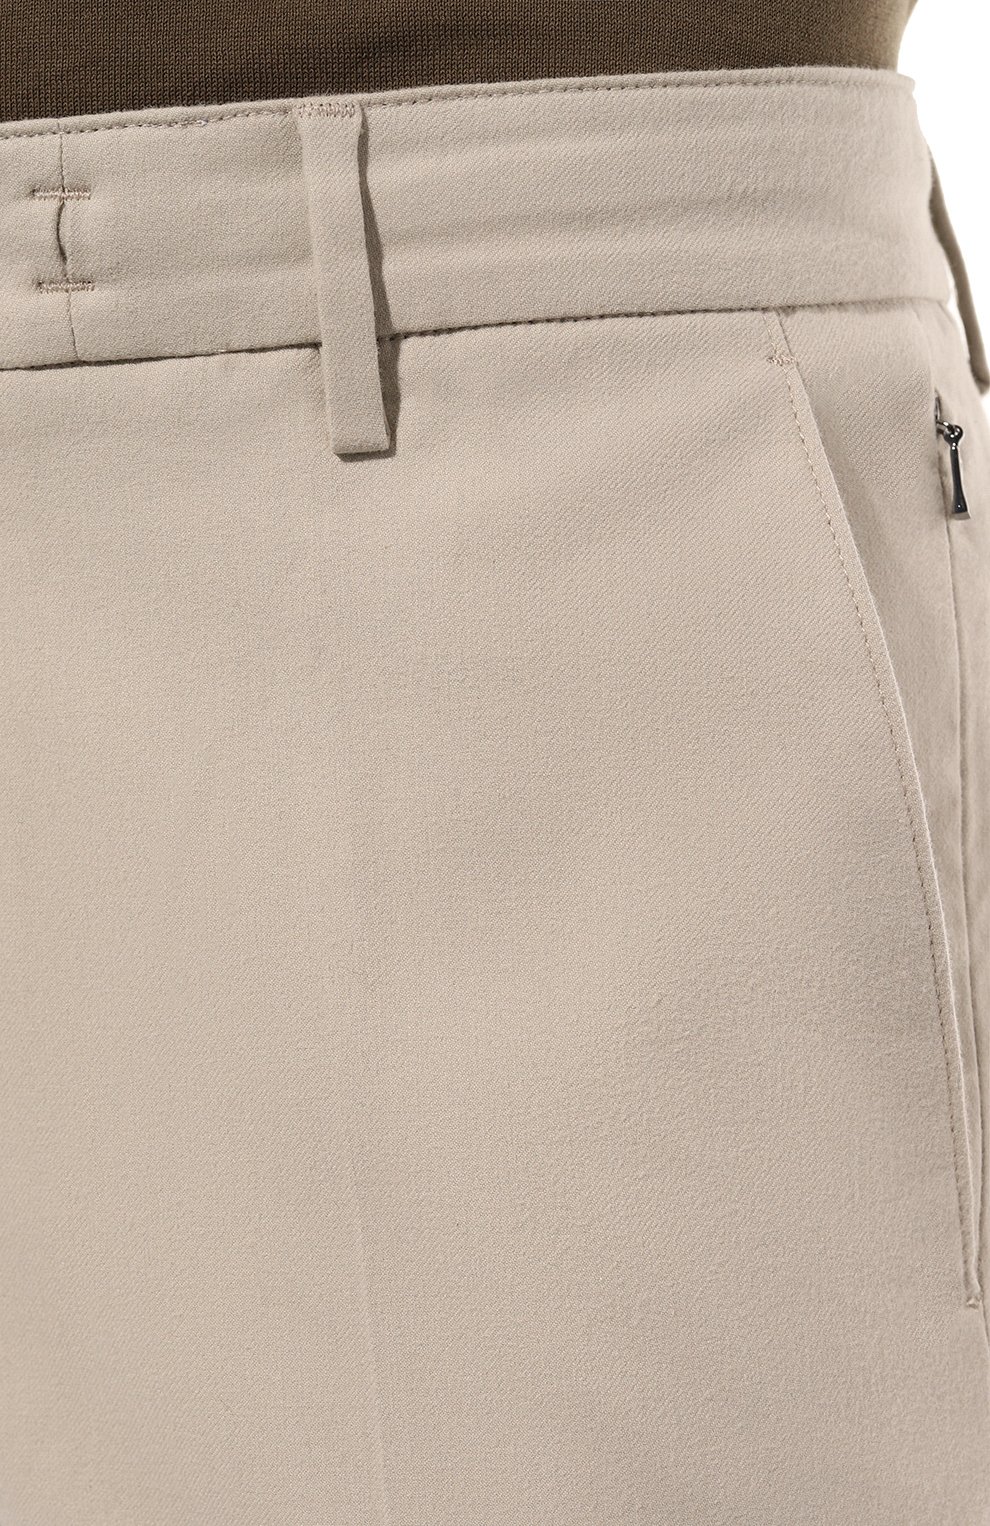 Мужские хлопковые брюки BOGNER бежевого цвета, арт. 18027848 | Фото 5 (Длина (брюки, джинсы): Стандартные; Случай: Повседневный; Материал внешний: Хлопок; Стили: Кэжуэл)